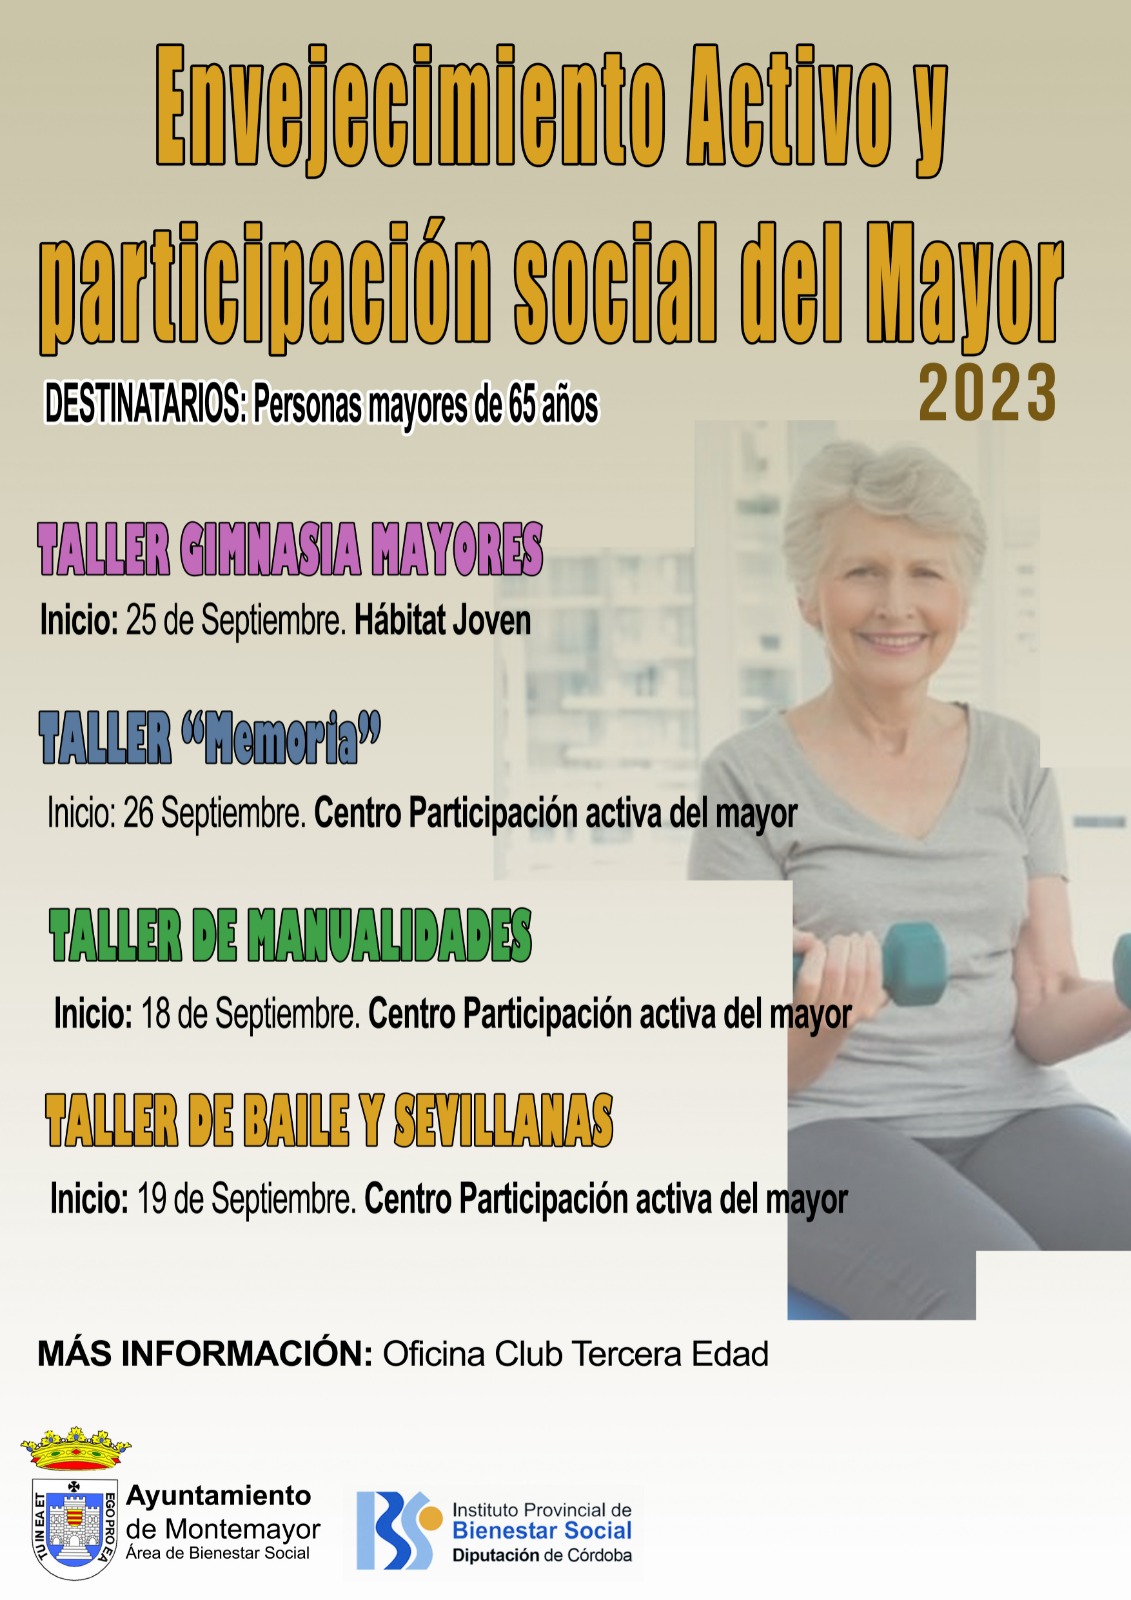 Envejecimiento Activo y Participación Social del Mayor 2023